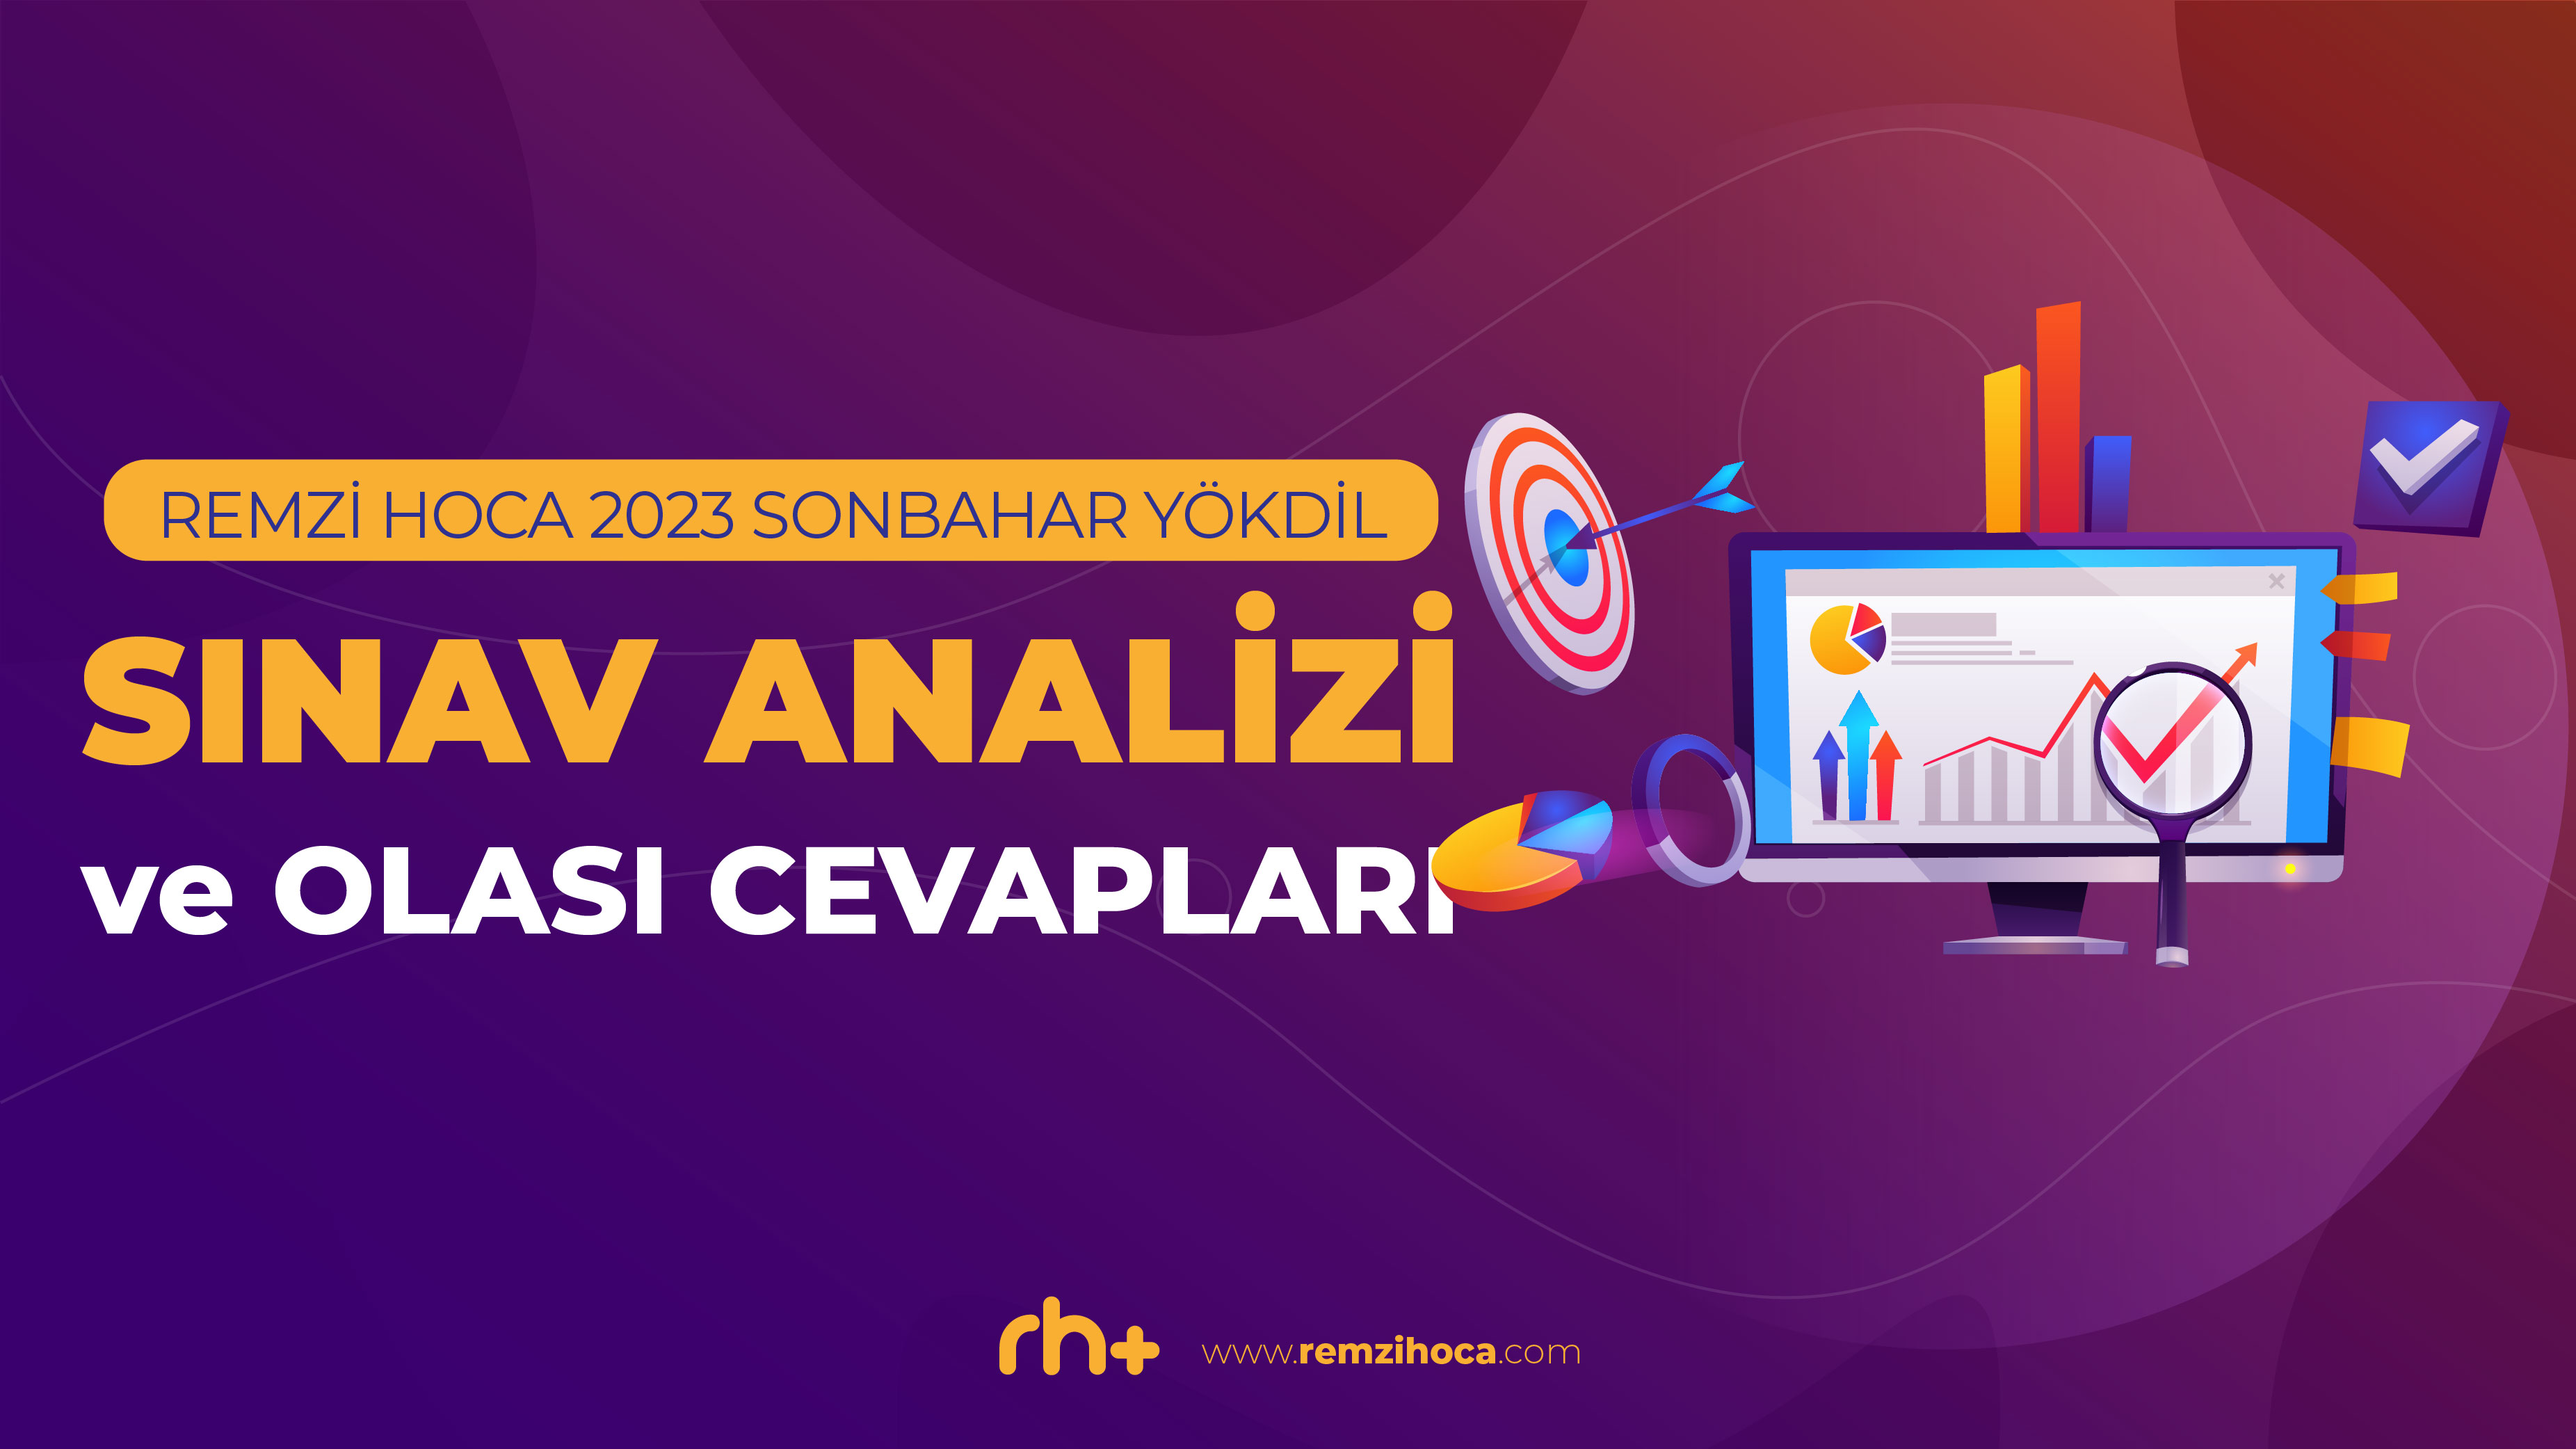 Remzi Hoca'nın 2023 Sonbahar YÖKDİL Sınav Analizi ve Olası Doğru Cevapları